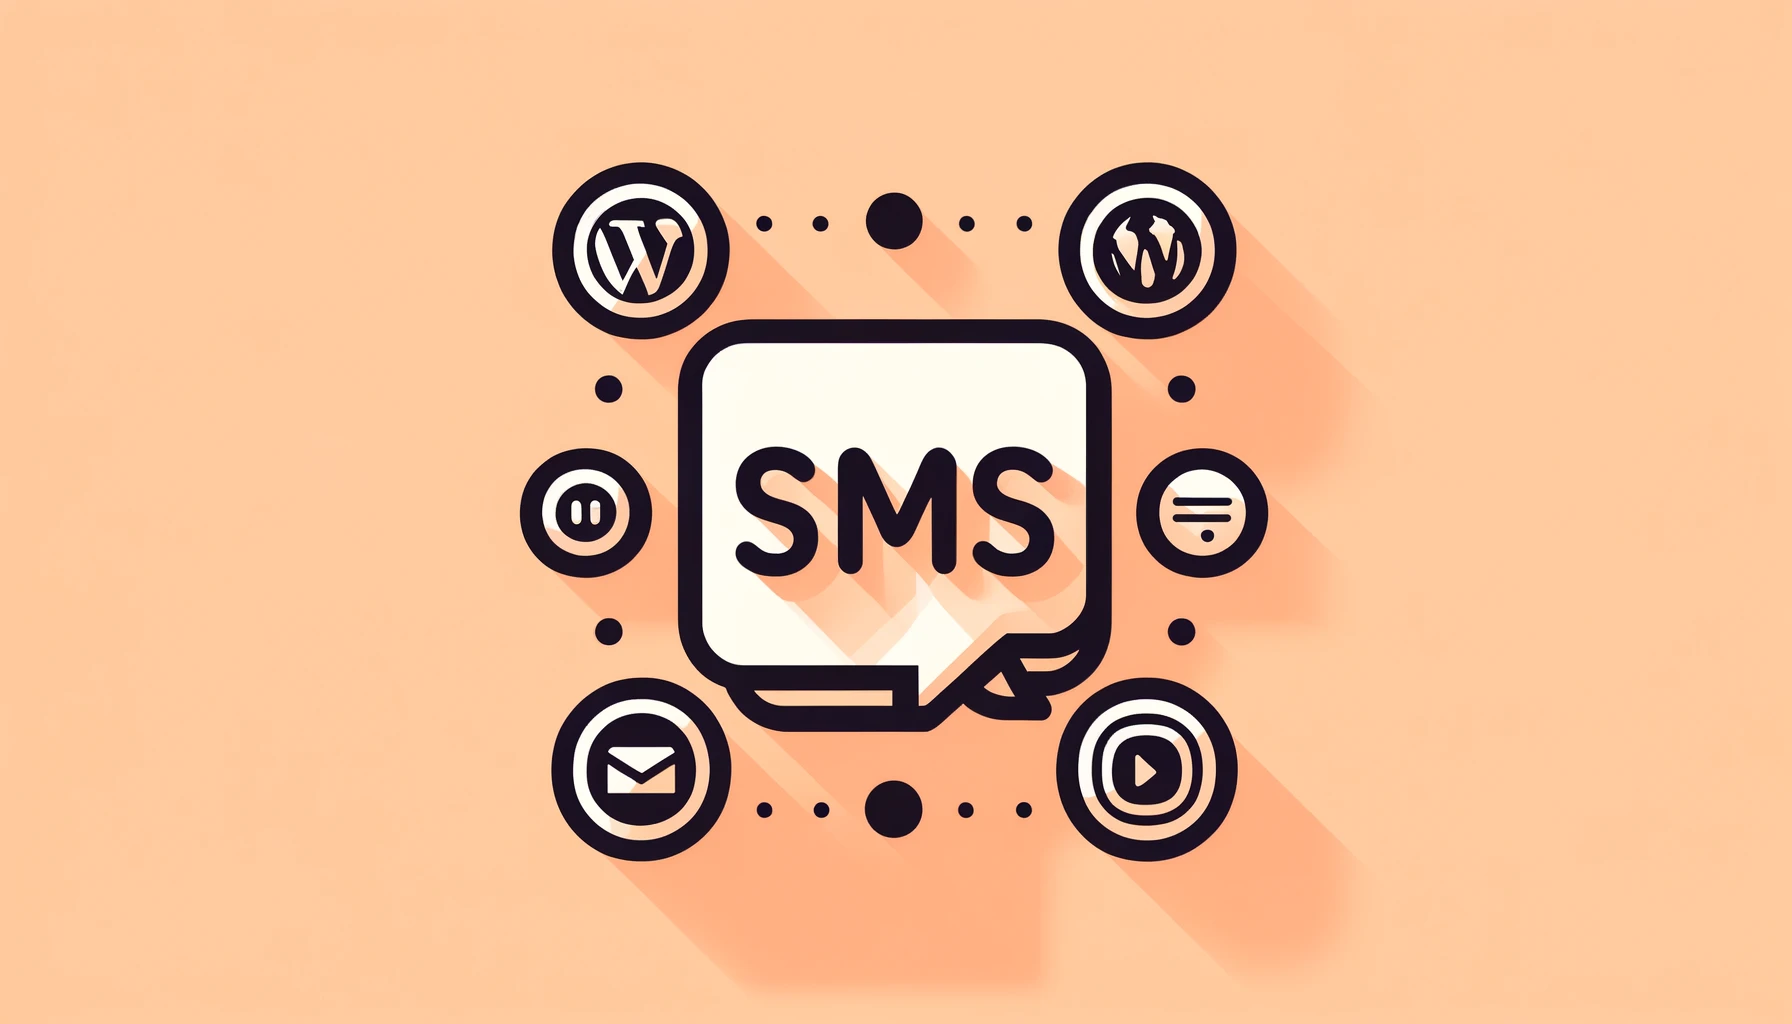 سرویس ارسال پیامک یکی از ابزارهای کلیدی در نرم‌افزارهای مدرن مانند وردپرس و میکروتیک است که امکان ارتباط سریع و موثر با کاربران، احراز هویت و اطلاع‌رسانی‌های فوری را فراهم می‌کند. این مقاله به بررسی کاربردها و مزایای این سرویس‌ها می‌پردازد.